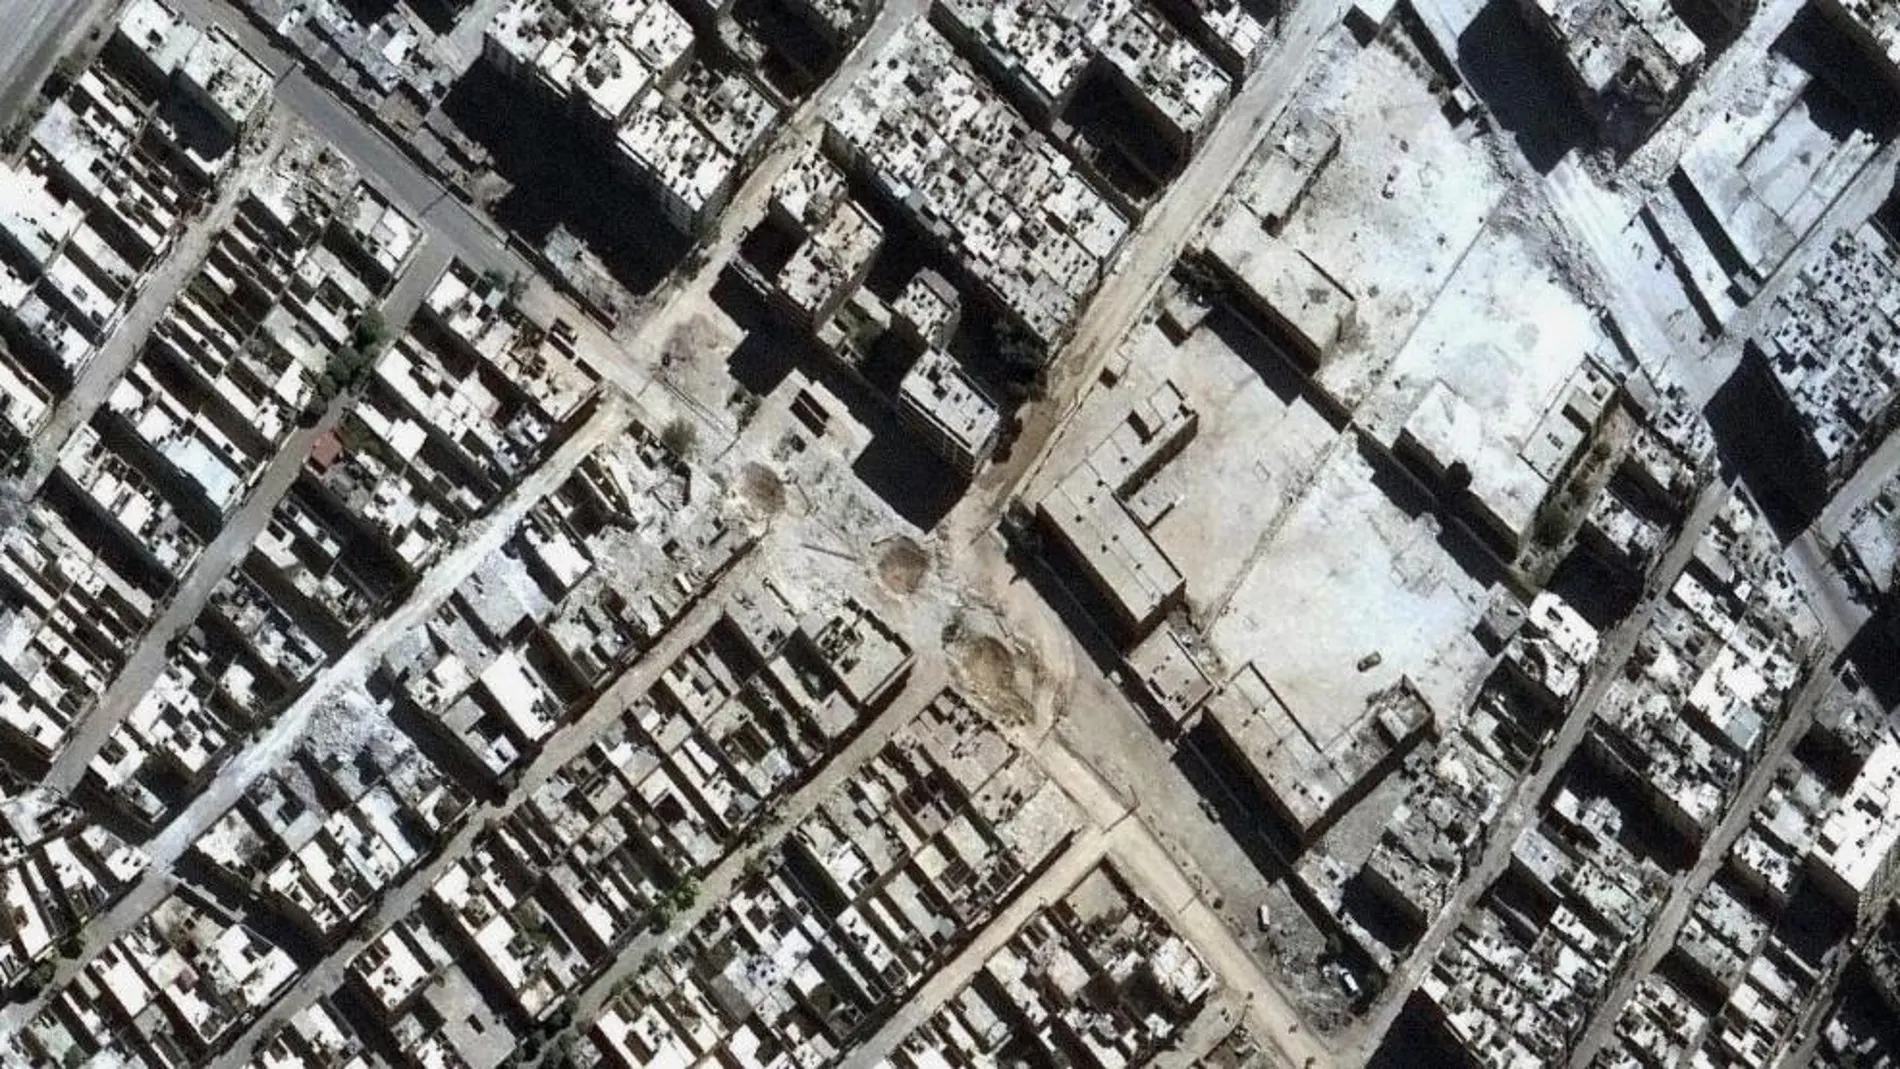 Fotografía de satélite de la destrucción en Alepo en octubre 2016, facilitada por Amnistía International